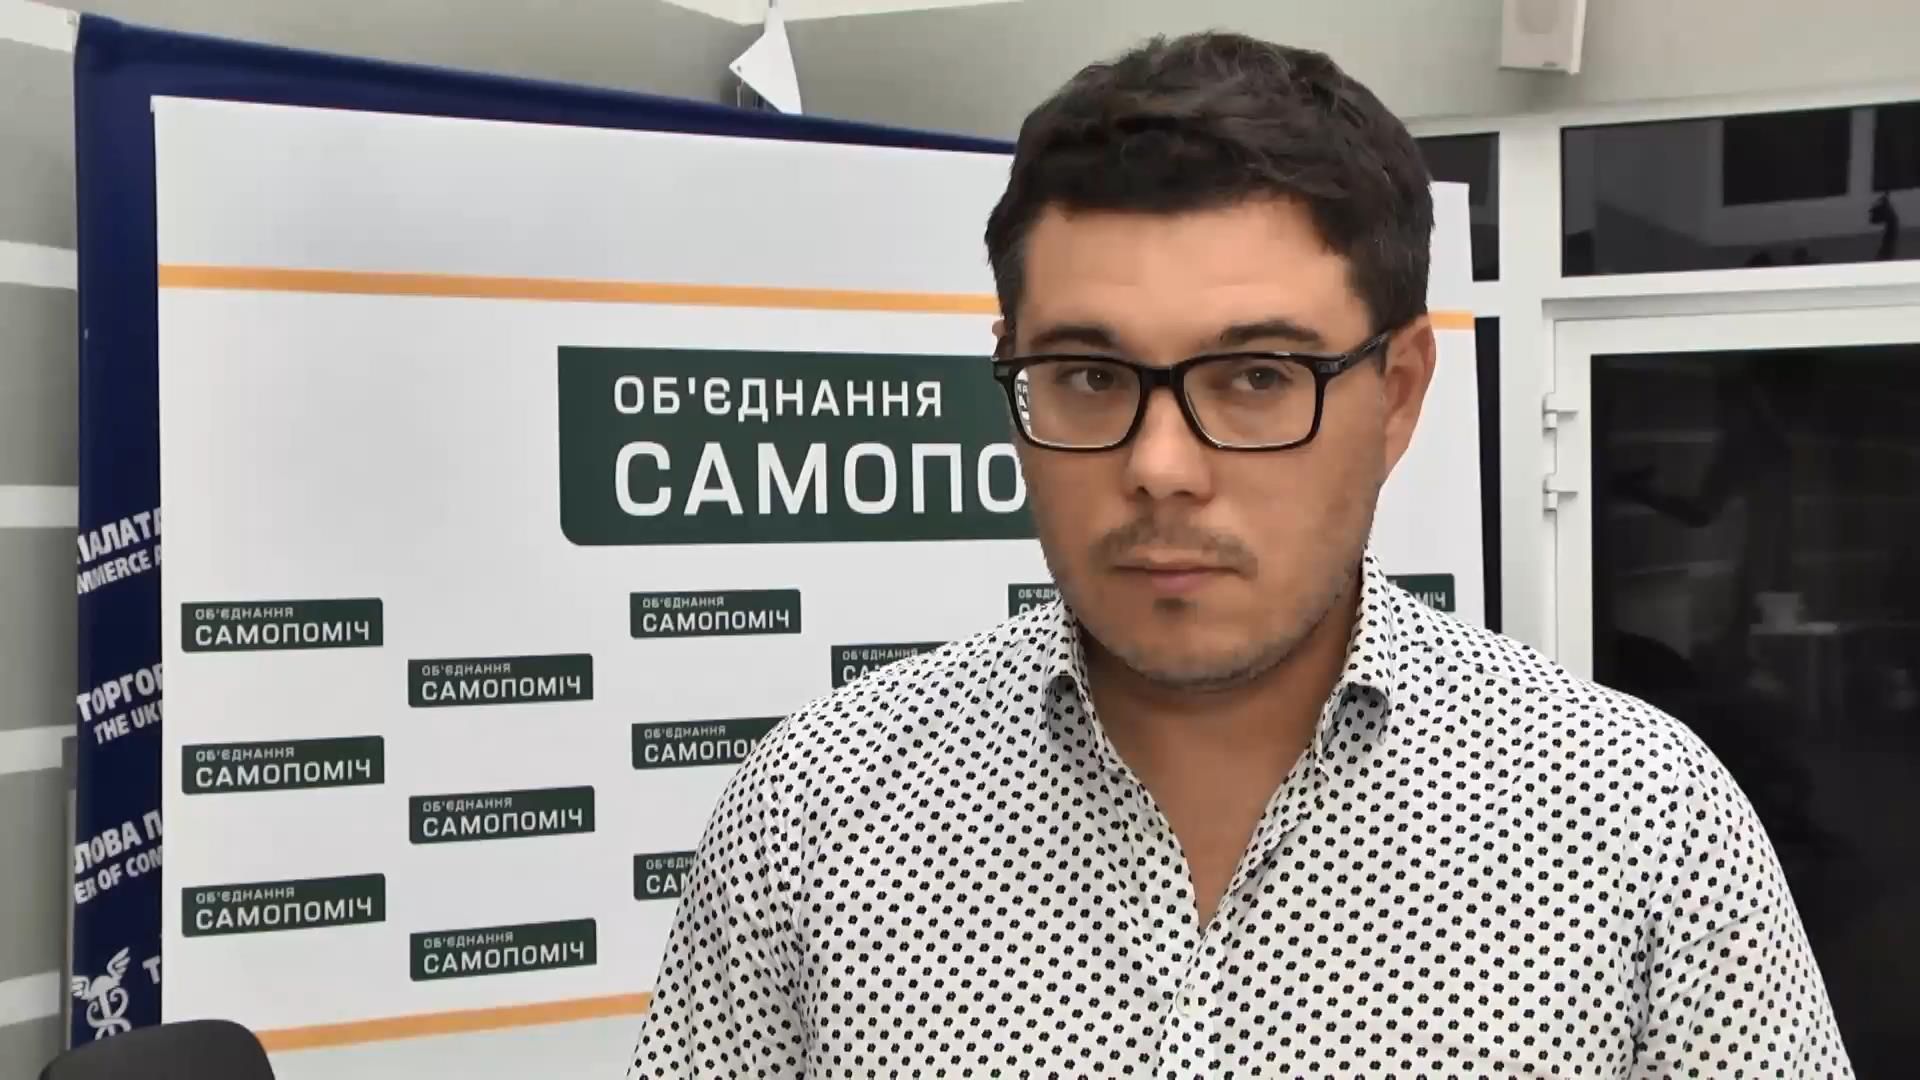 Експерт прокоментував програму розвитку Києва, запропоновану партією "Самопоміч"